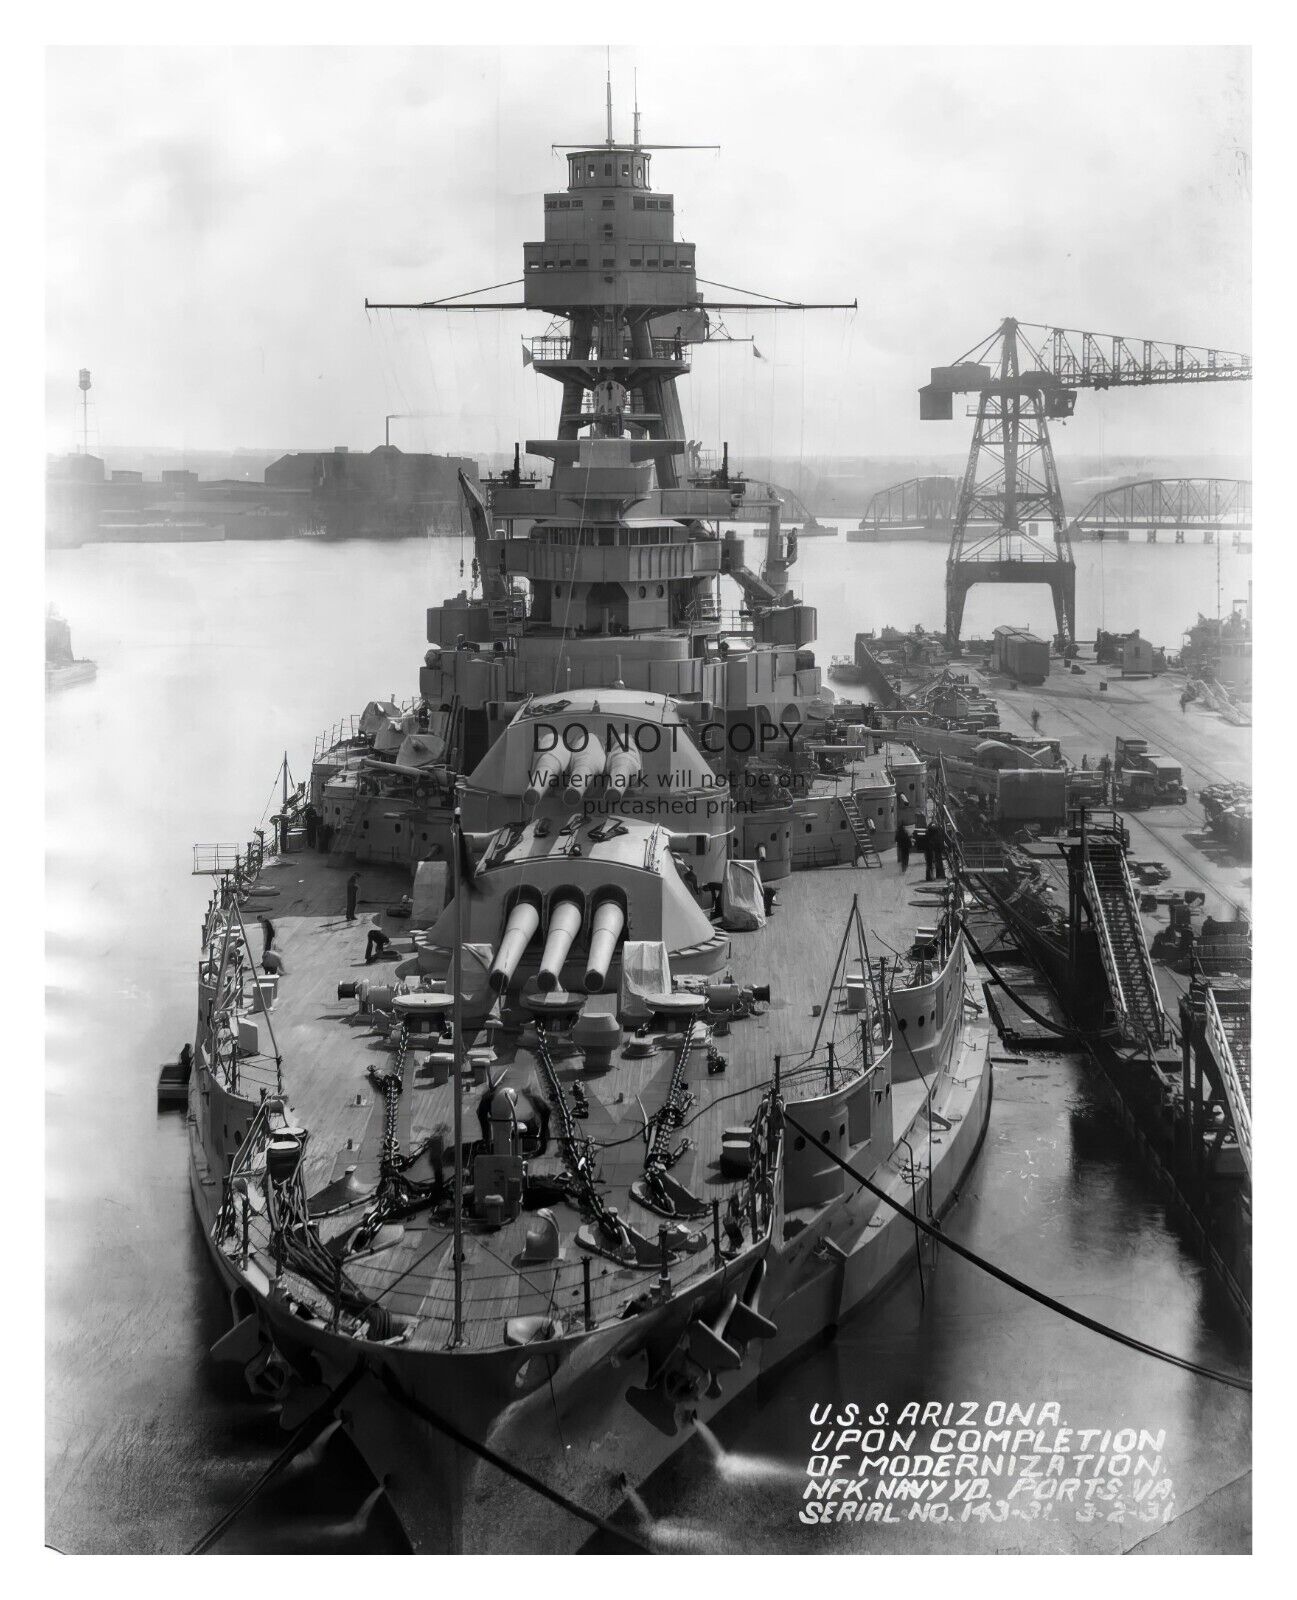 USS ARIZONA NAVY BATTLESHIP AT NORFOLK SHIPYARD IN PORTSMOUTH WW2 8X10 PHOTO